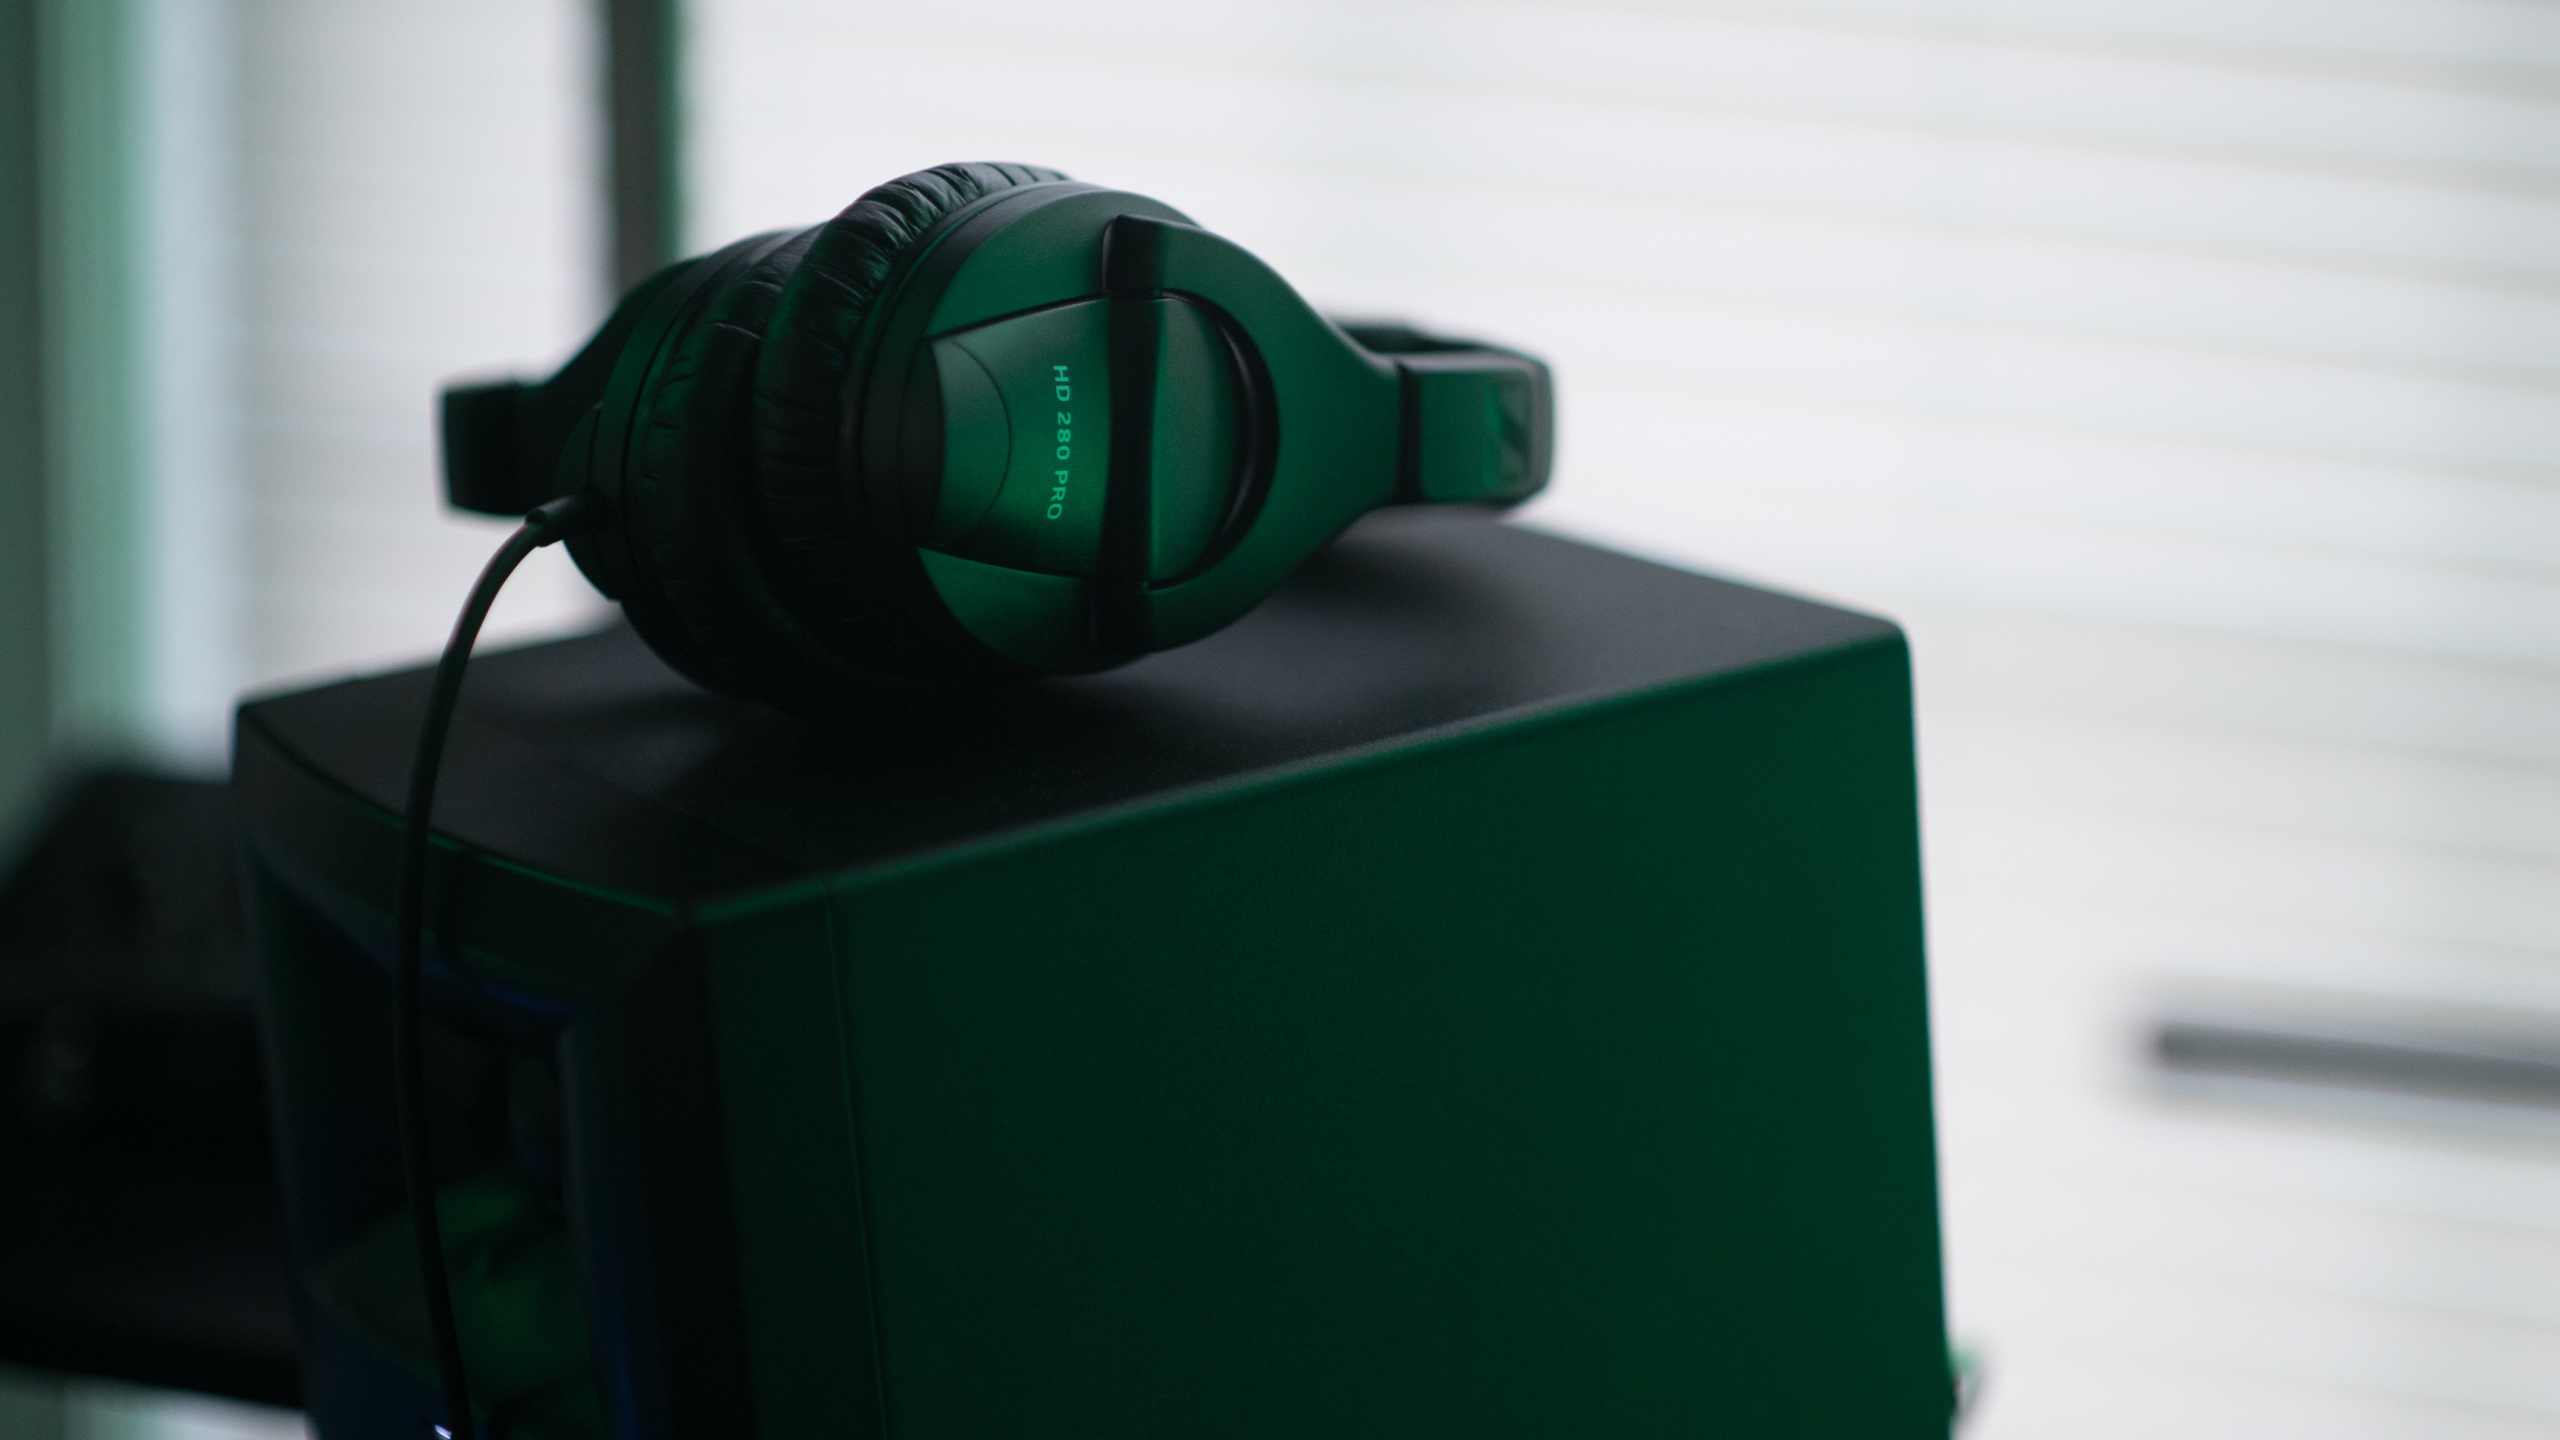 Headphones, Loudspeaker, Green, Audio Equipment, Gadget. Wallpaper in 2560x1440 Resolution